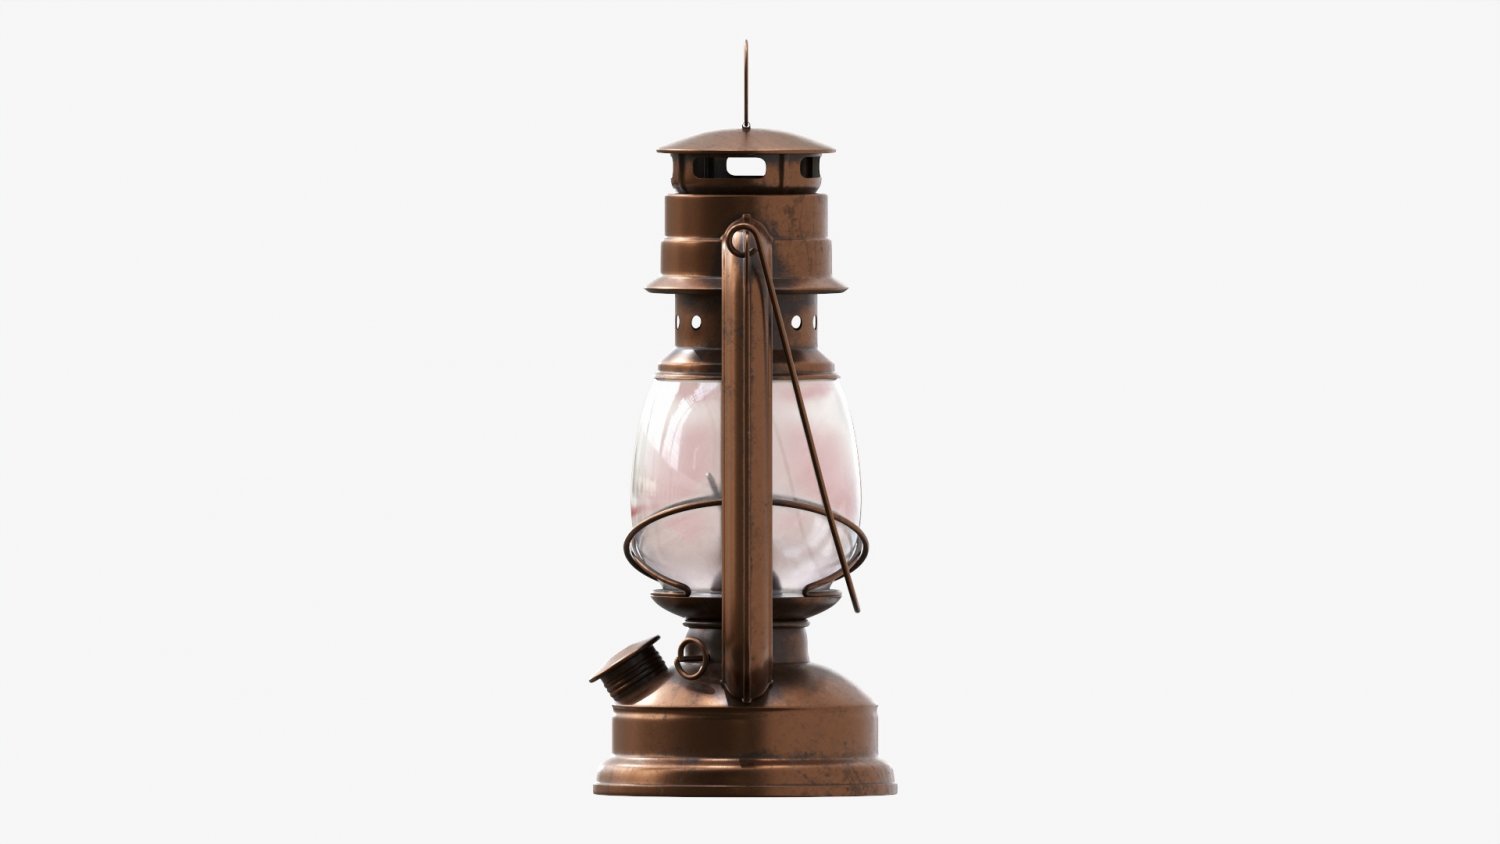 Kerosene lamp 3dsmax obj dae blend 3D Model $5 - .max - Free3D